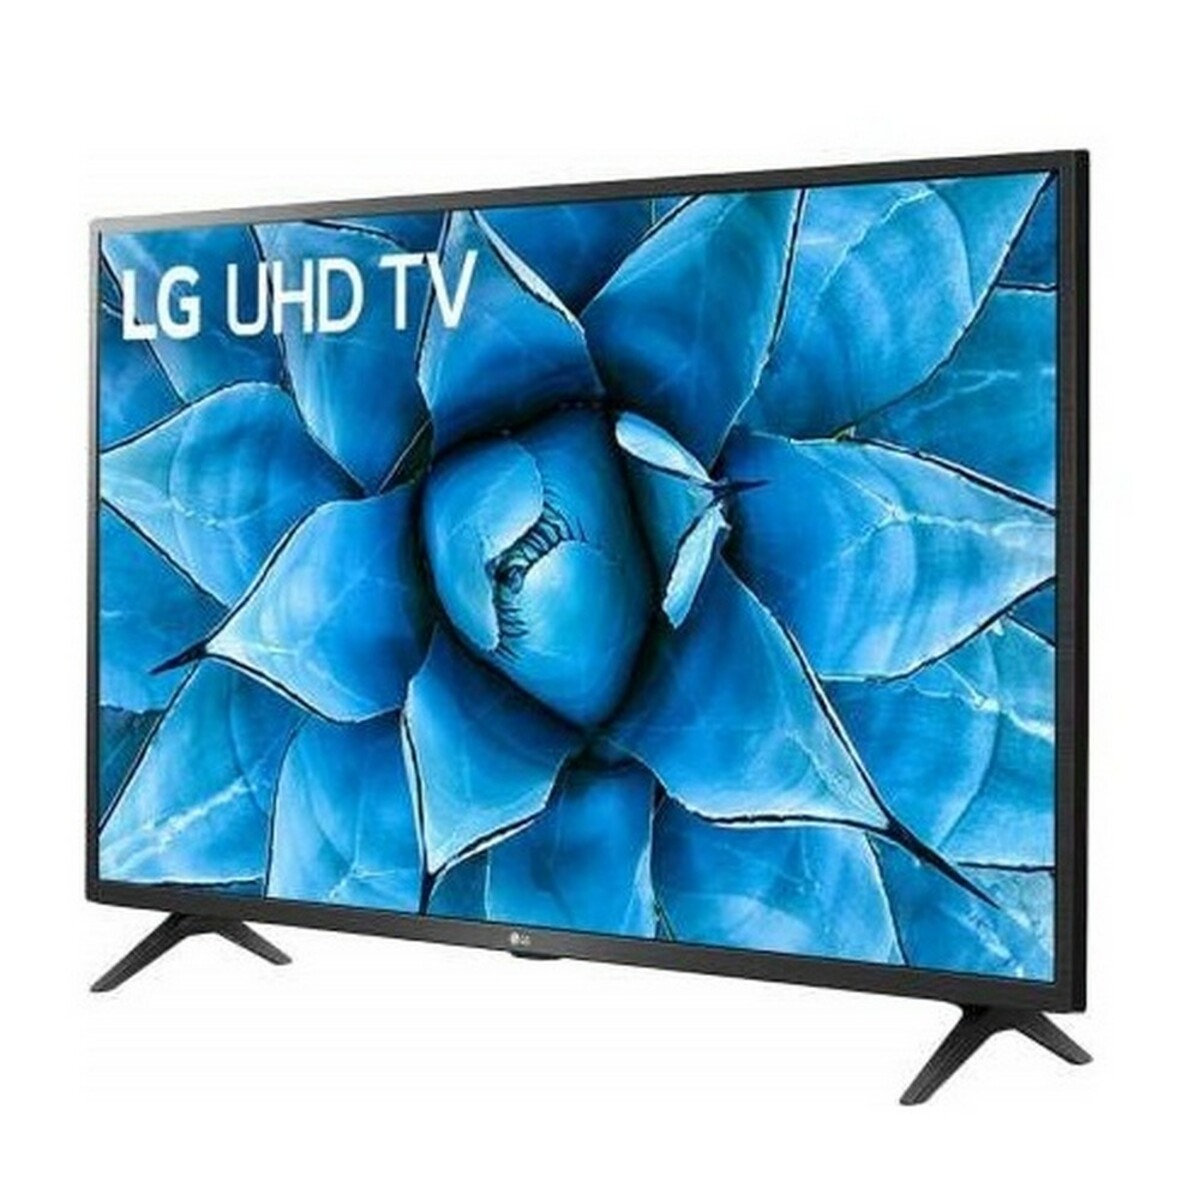 LG 4K Ultra HD LED TV 55UN7300PTC 55"